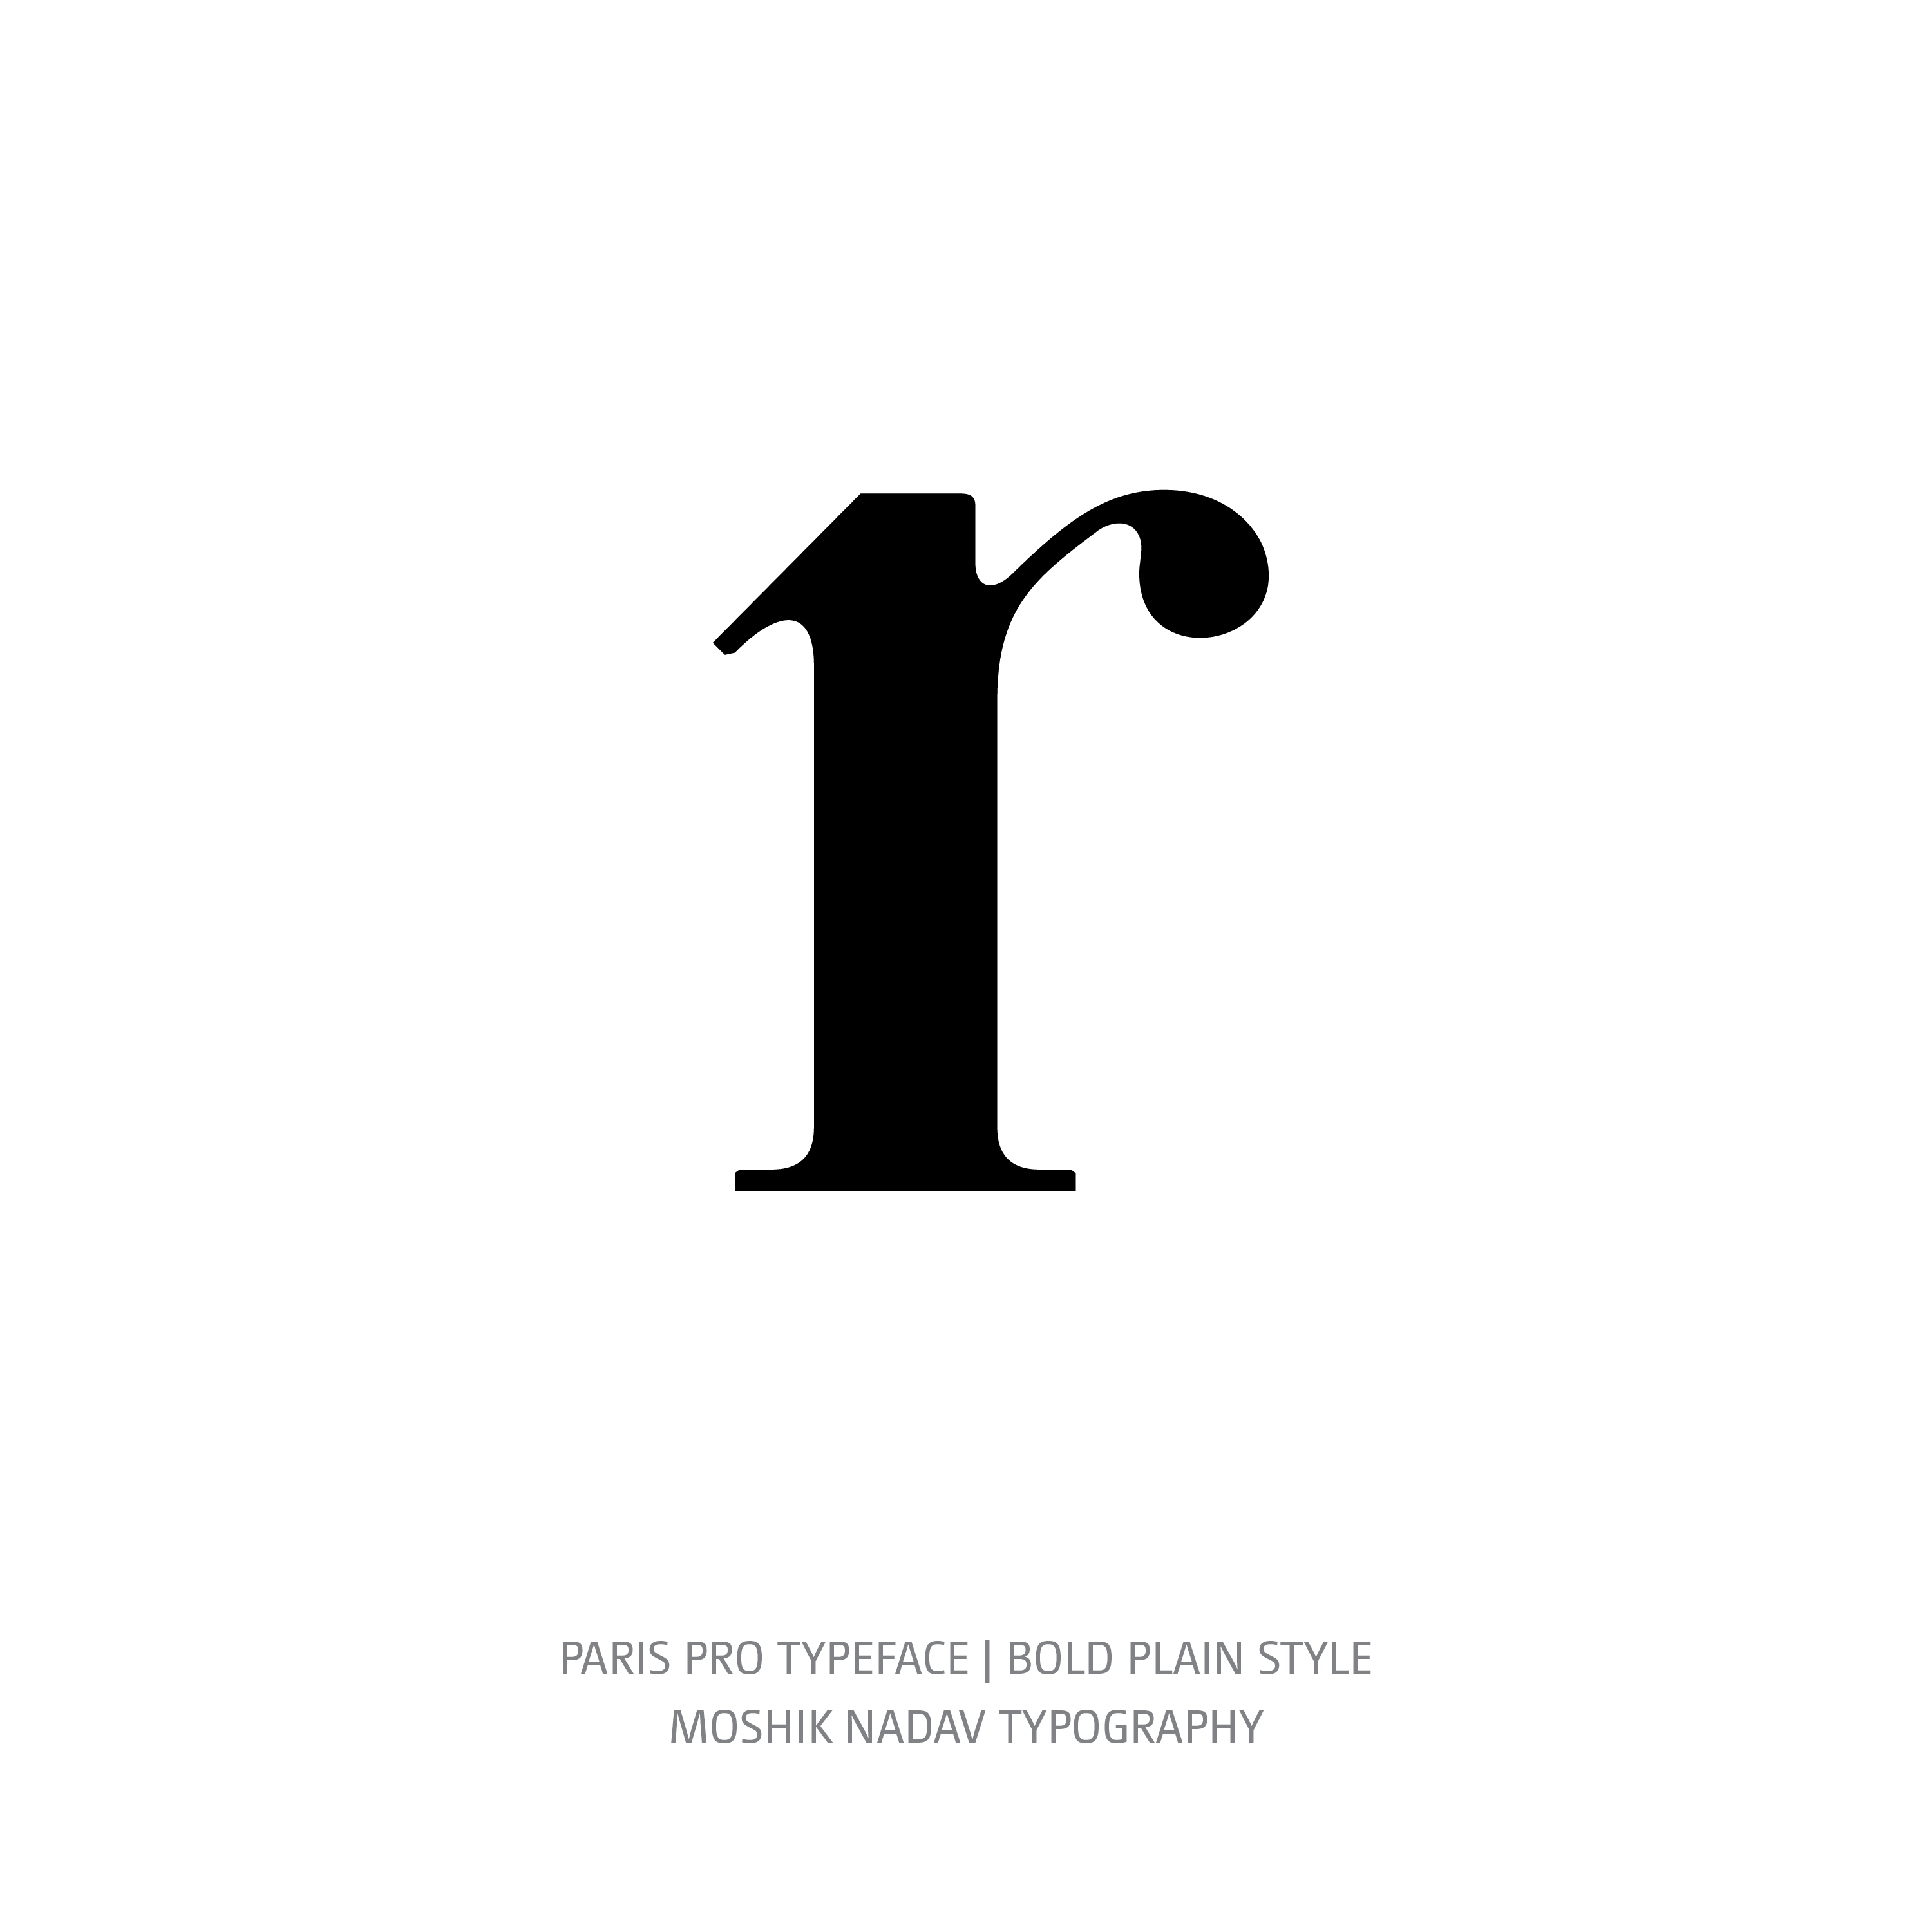 Paris Pro Typeface Bold Plain r